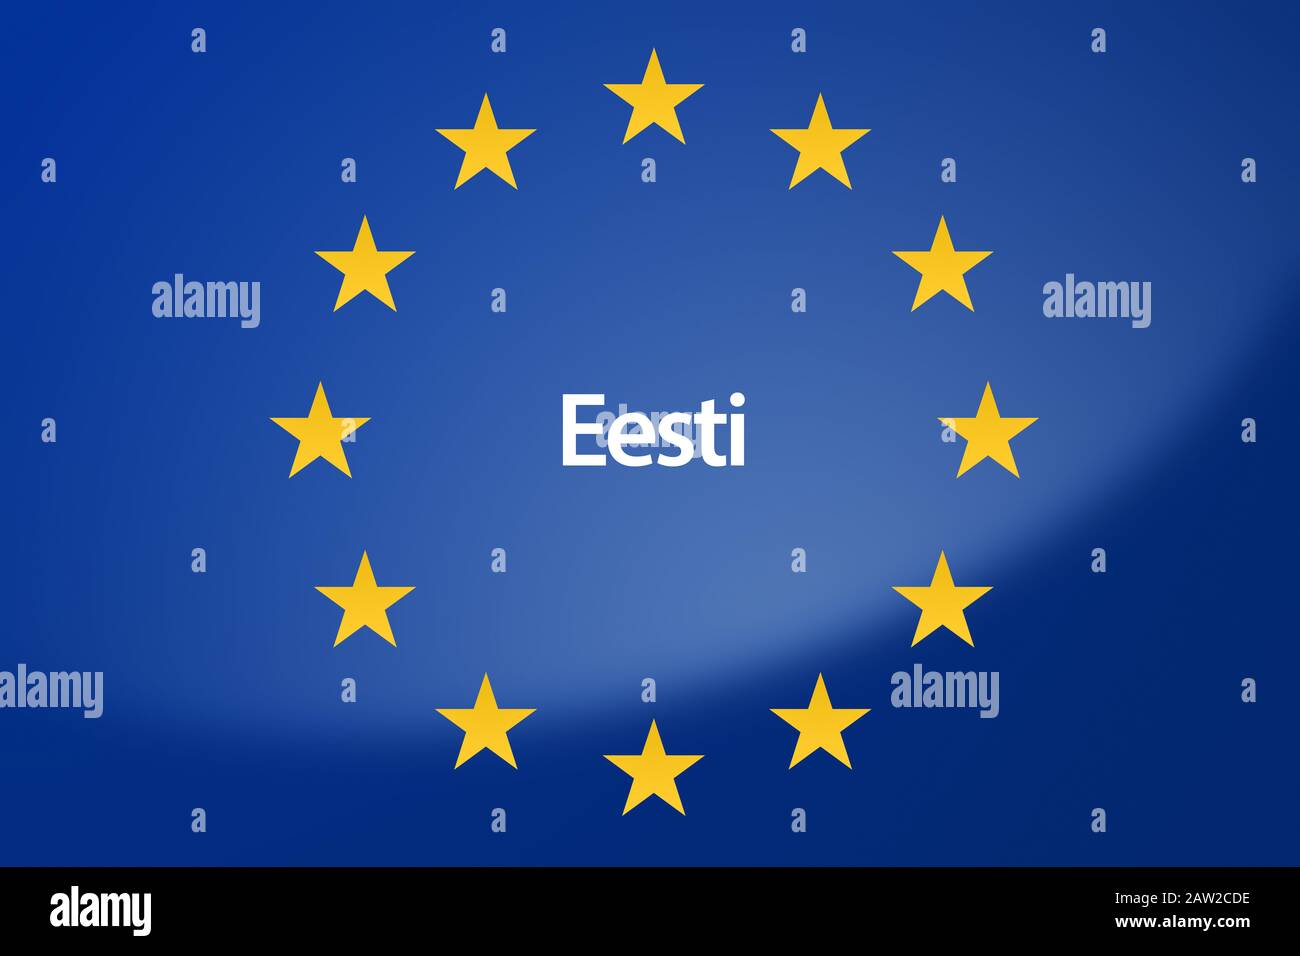 Immagine della bandiera dell'Unione europea - etichettata con l'Estonia in lingua estone Foto Stock